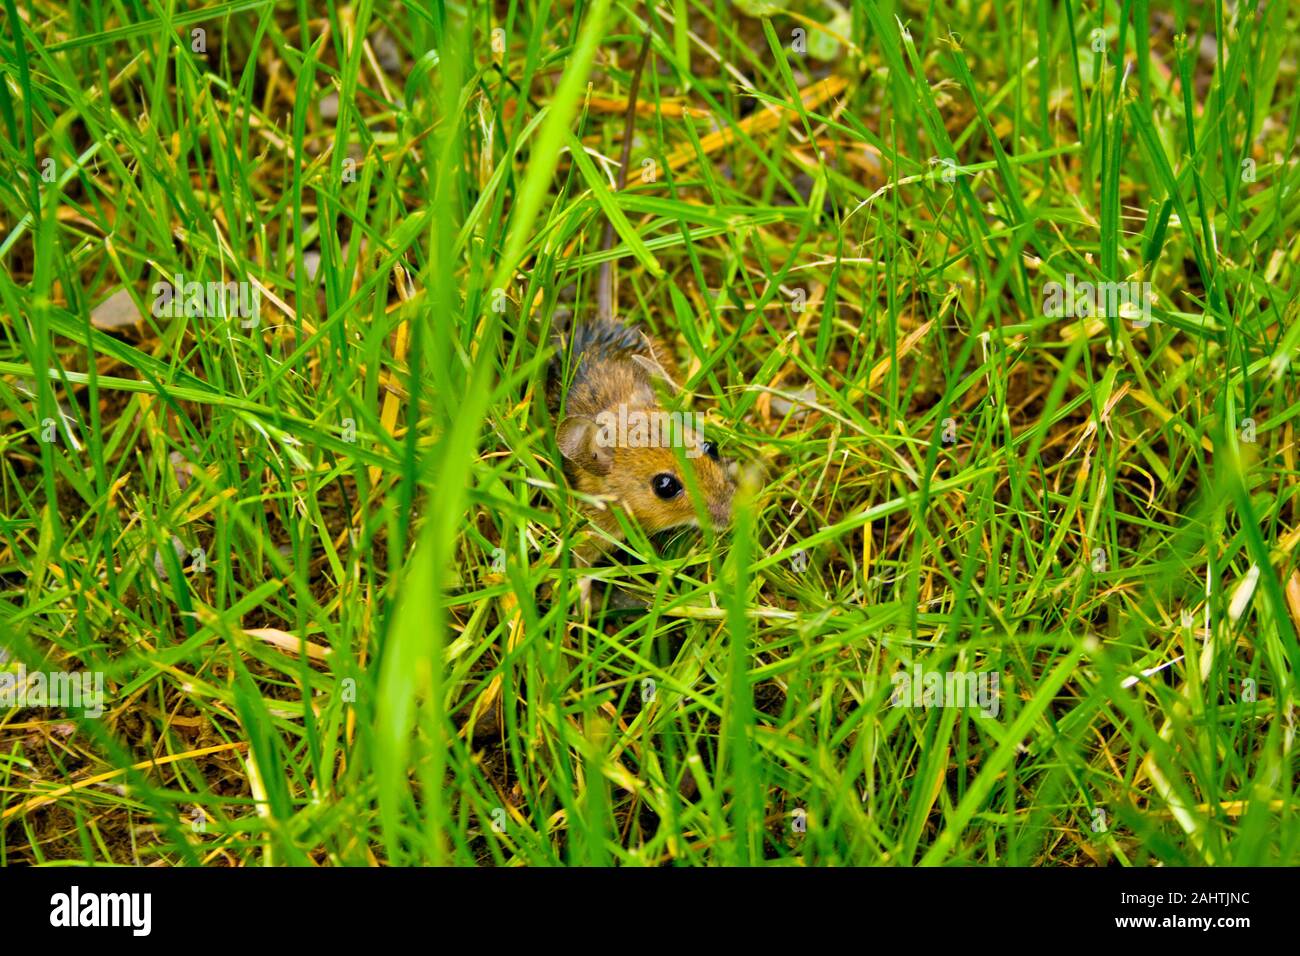 Un peu mégère se cache dans l'herbe en face d'un chat Banque D'Images